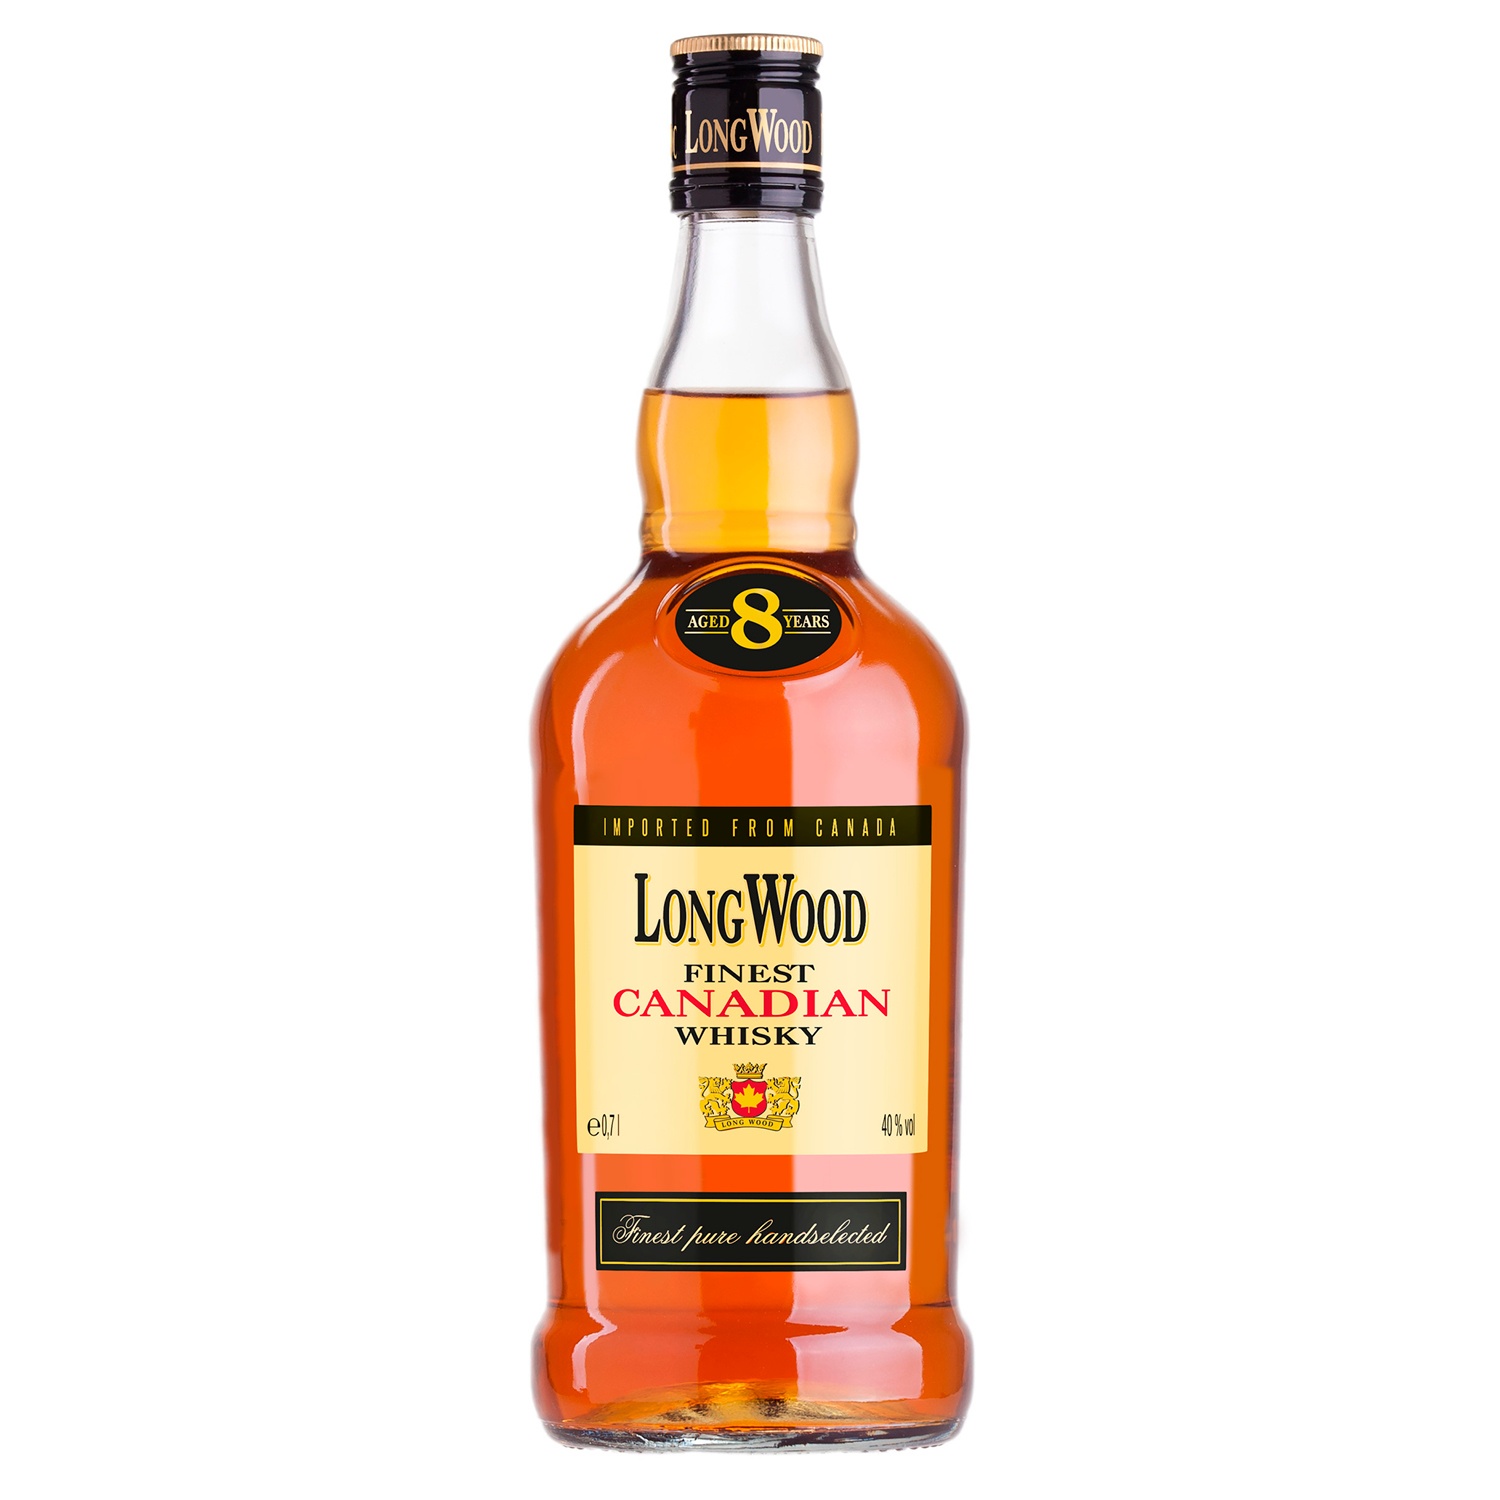 Welche Kauffaktoren es vorm Bestellen die Long wood whisky zu analysieren gilt!